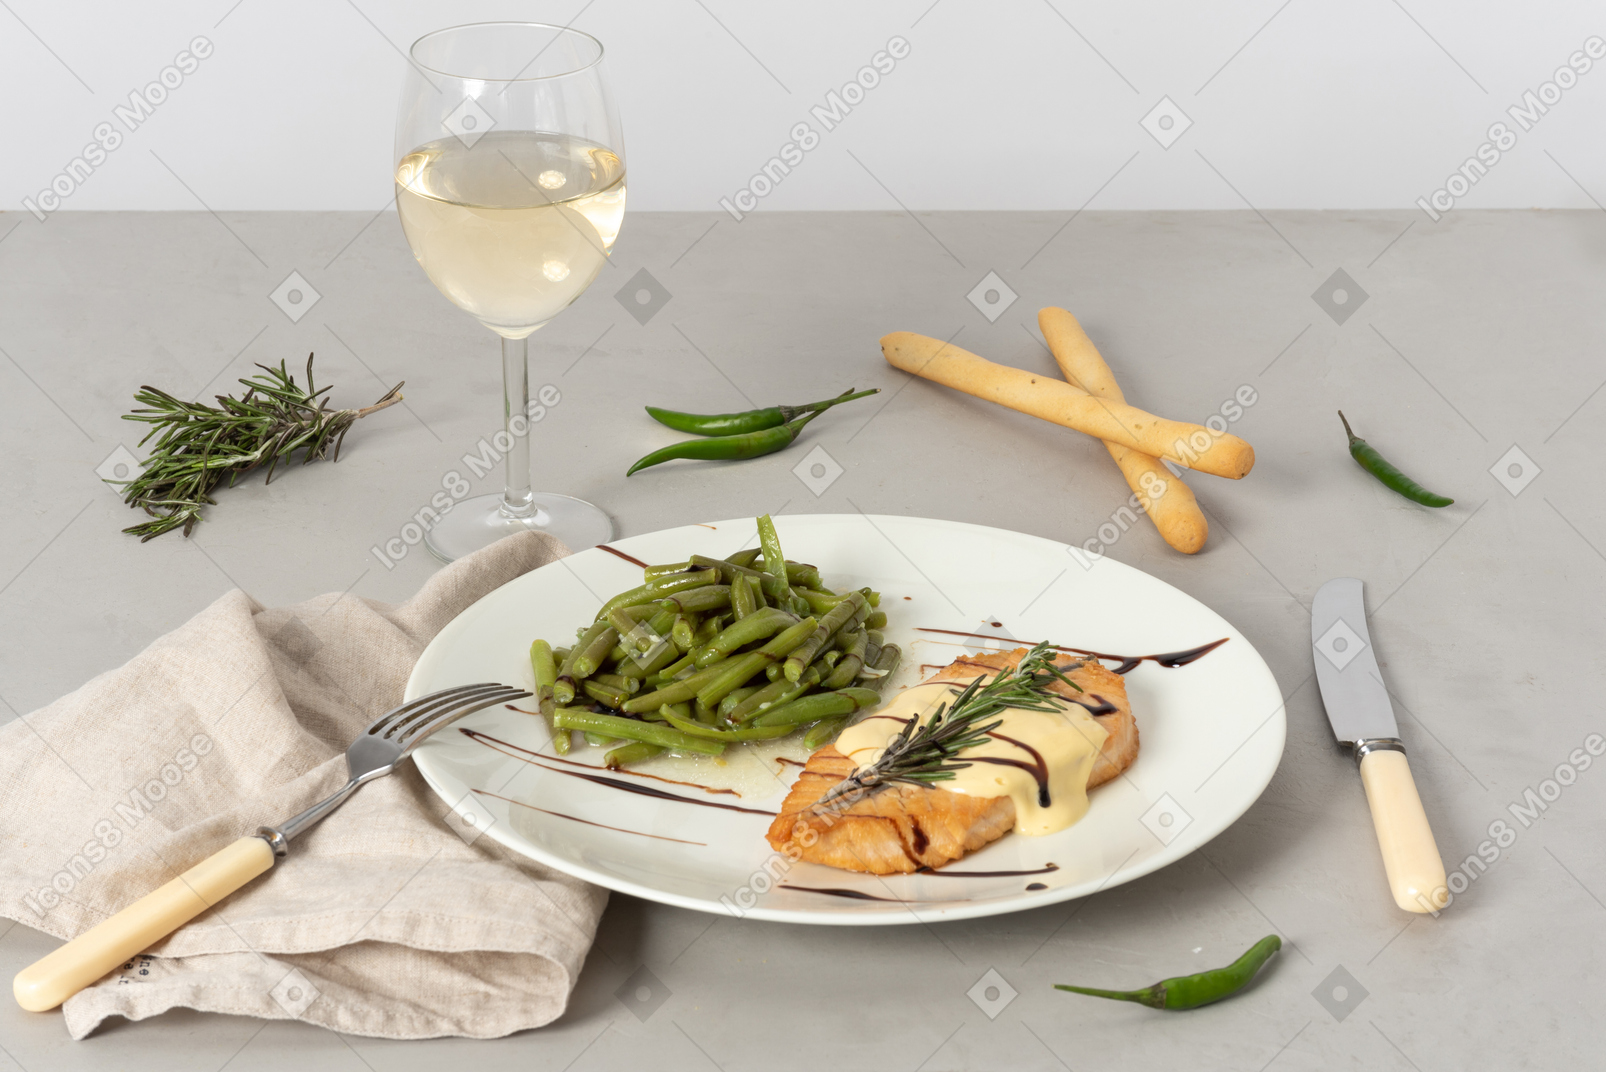 Plat de poisson et haricots verts, verre de vin blanc, grissini, fourchette et couteau